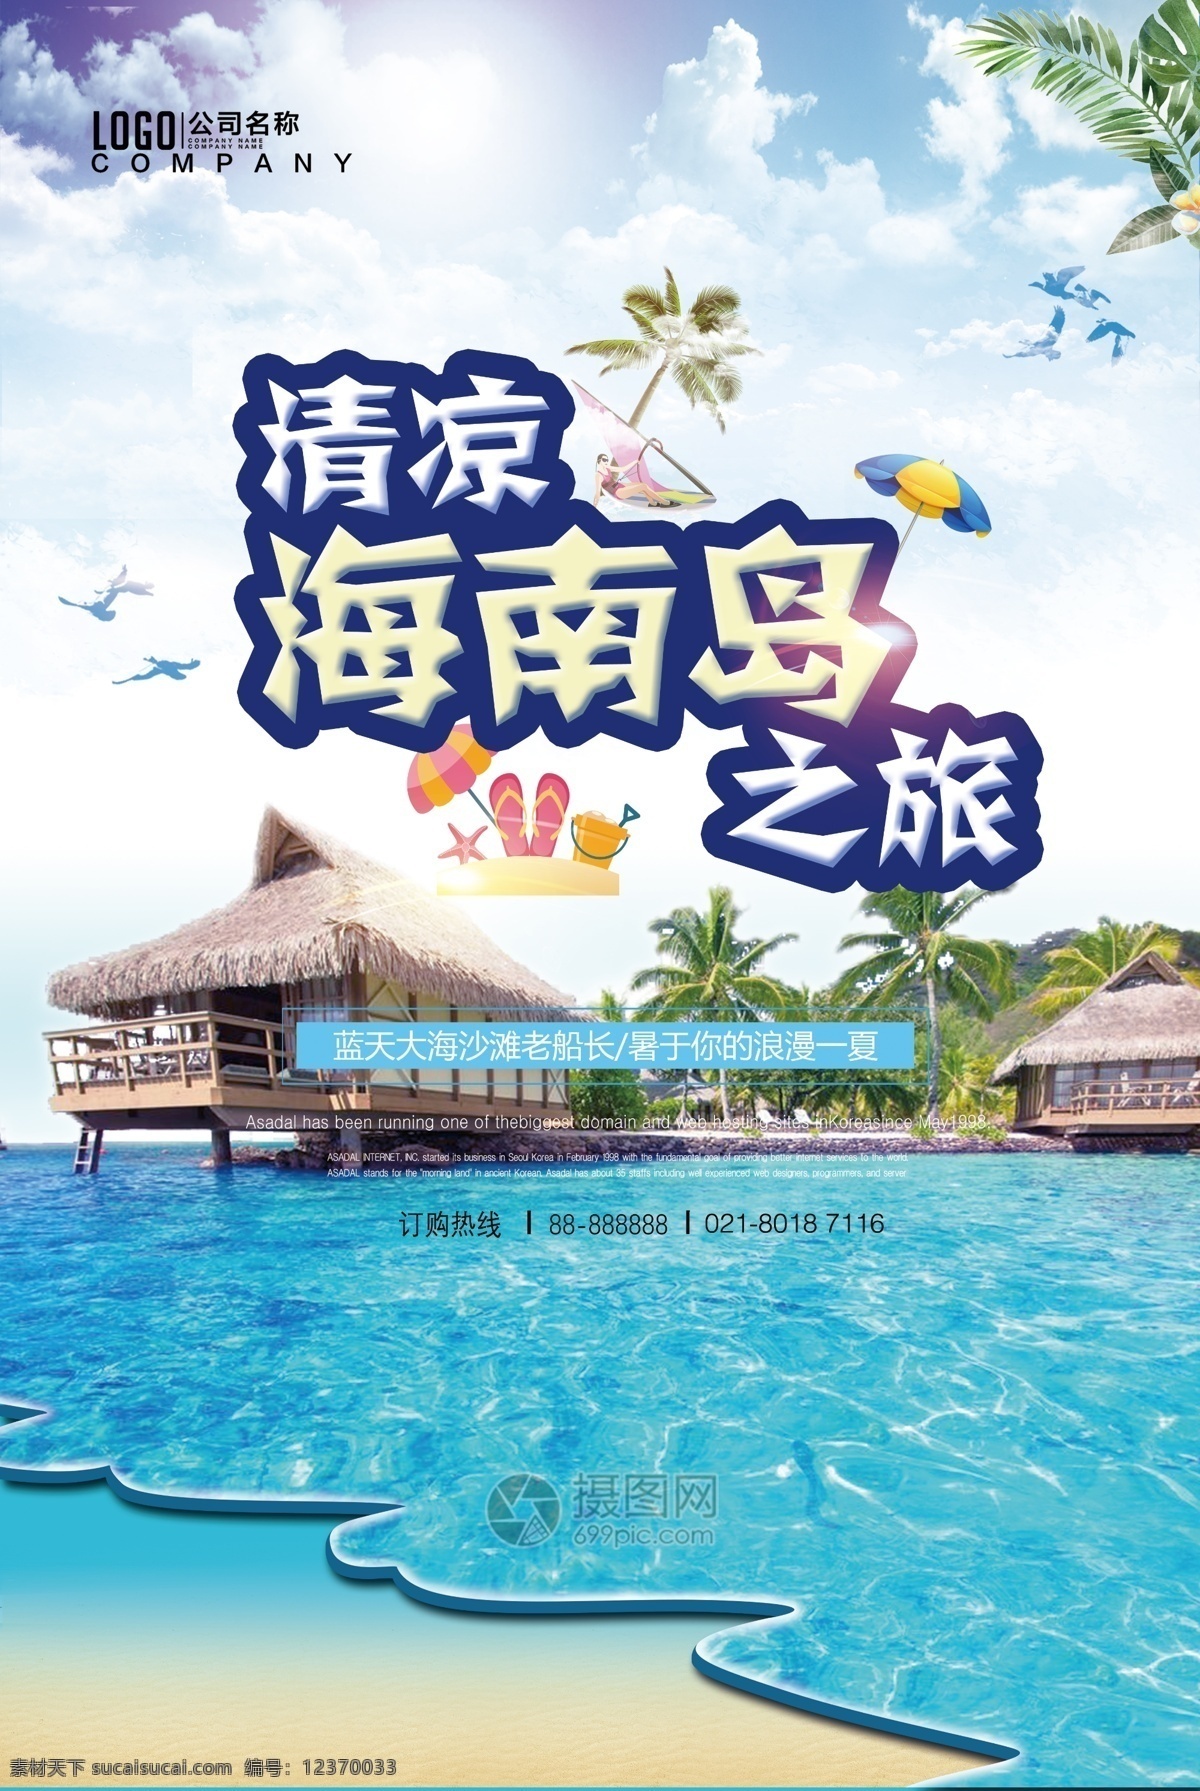 海南岛 之旅 海报 旅游 海南岛之旅 国内旅游 旅行 海洋 旅游海报 海南岛海报